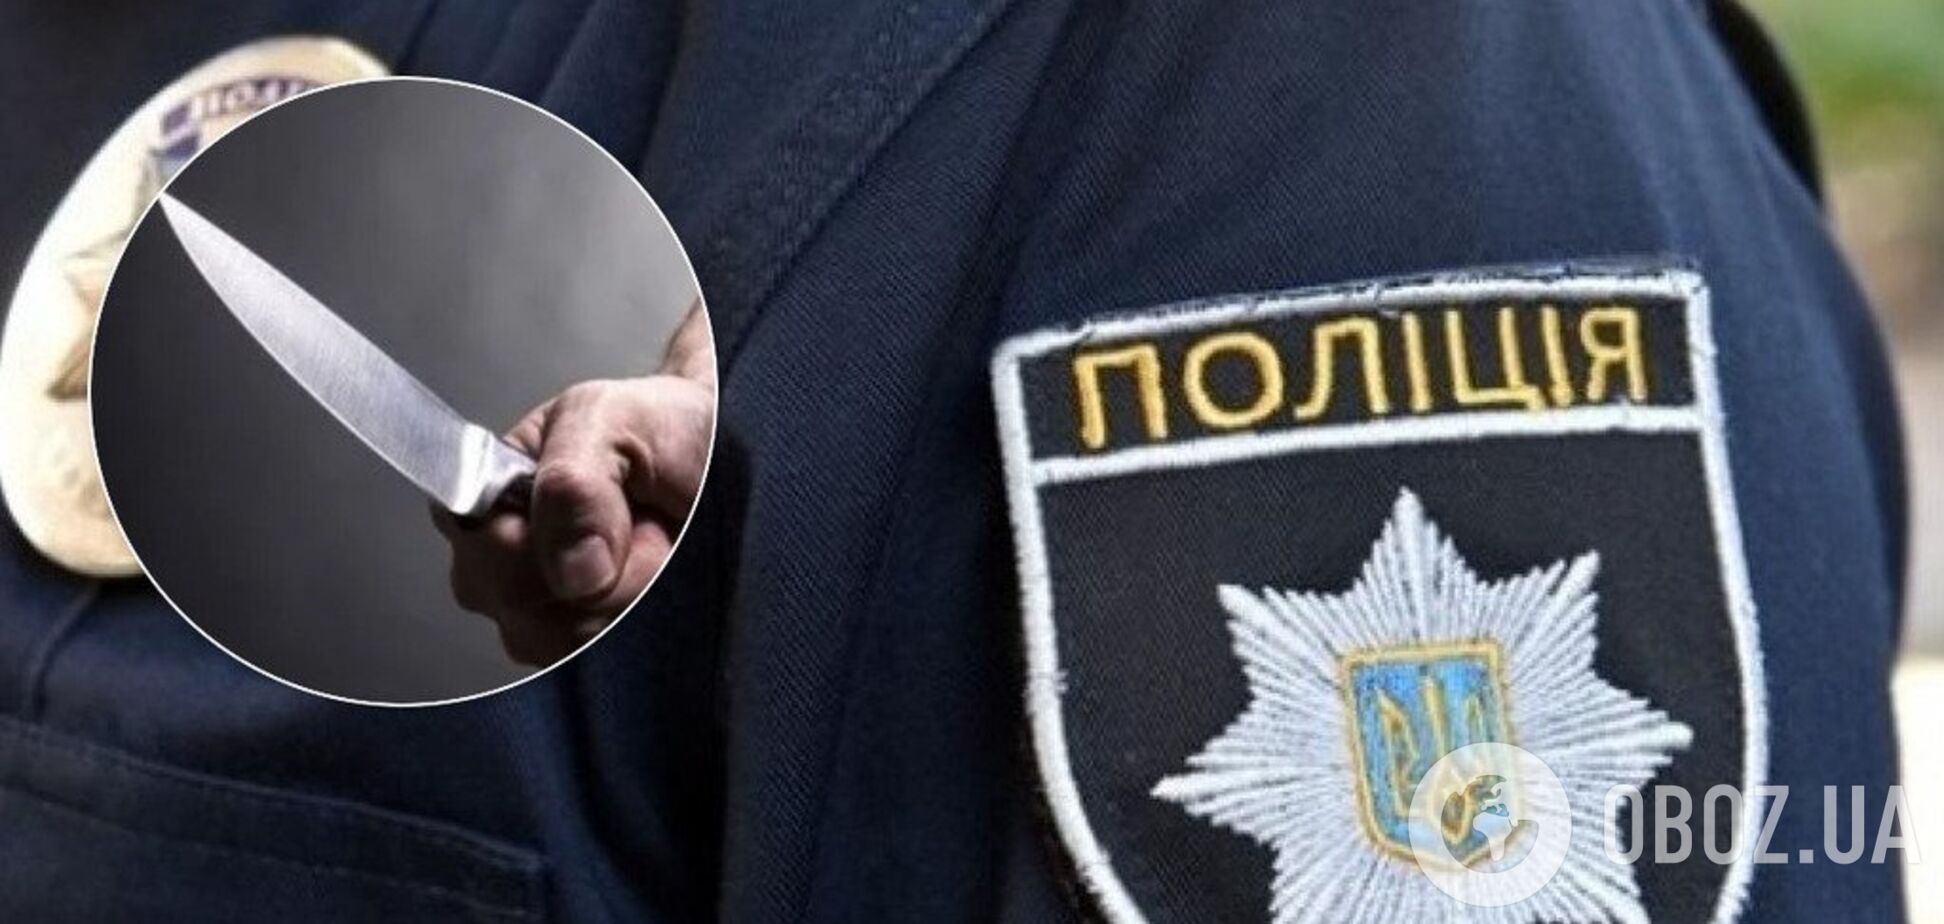 Резали ножом: в Харькове полицейский спас заложницу